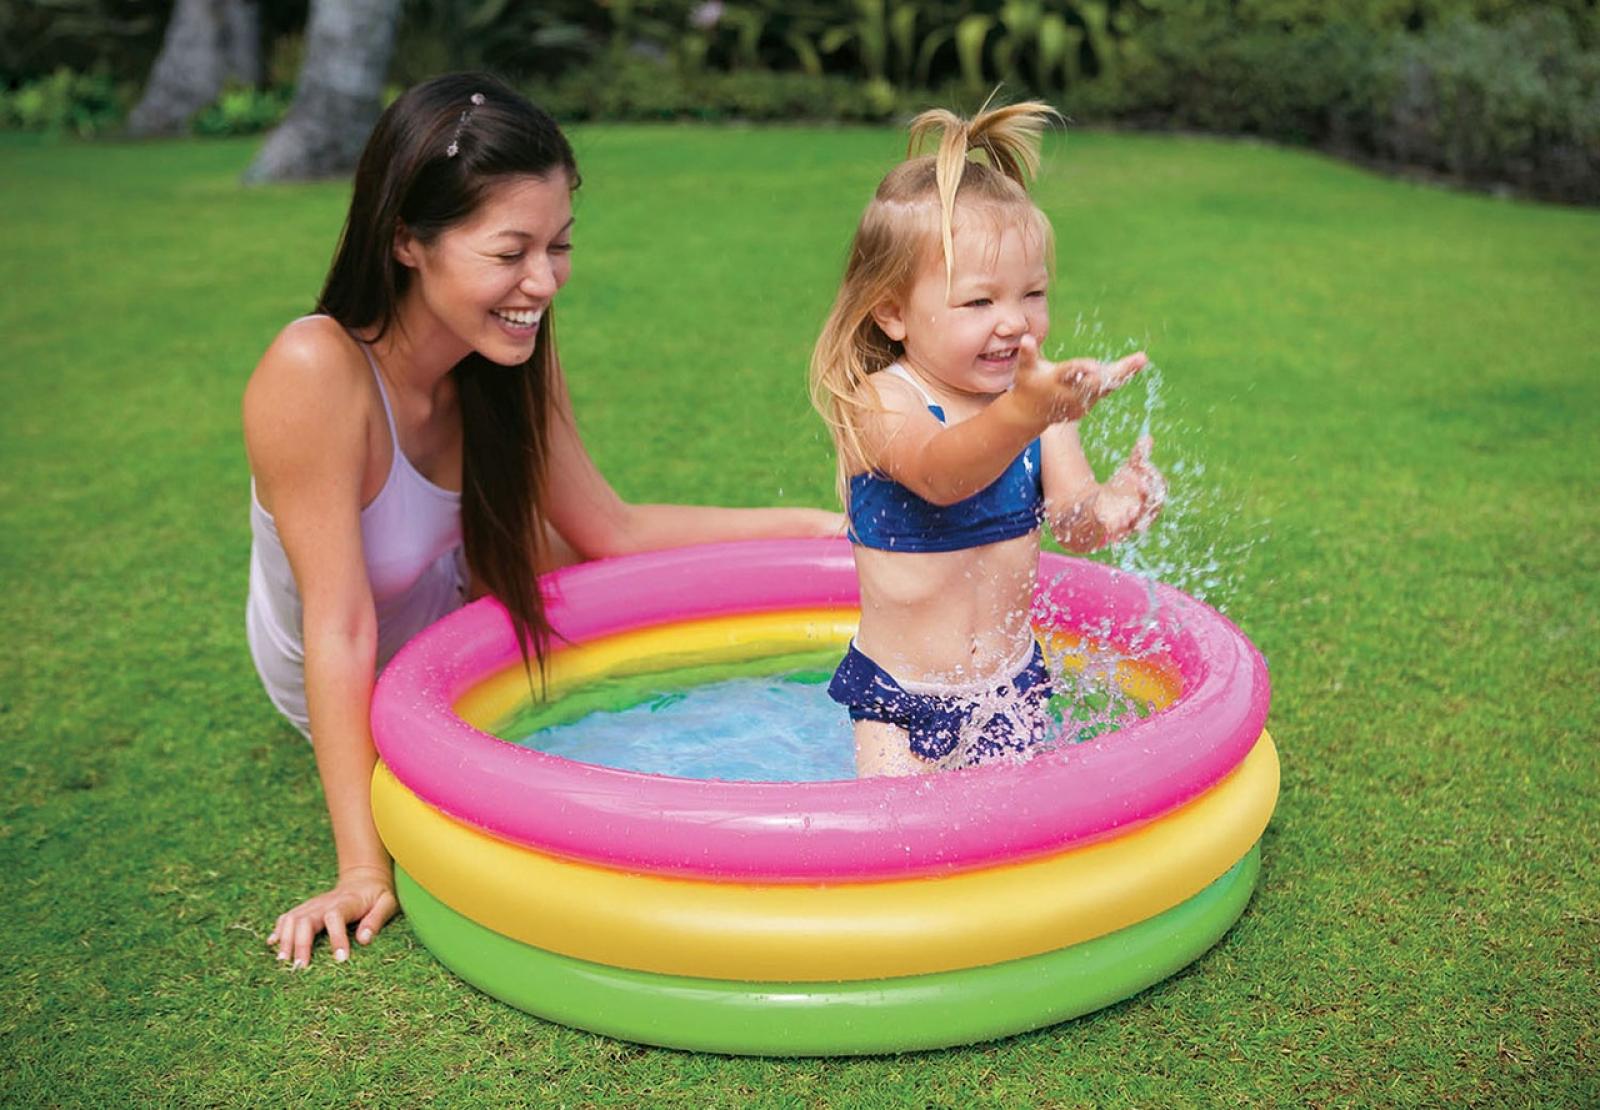 Intex Sunset Glow Inflatable Kiddie Pool